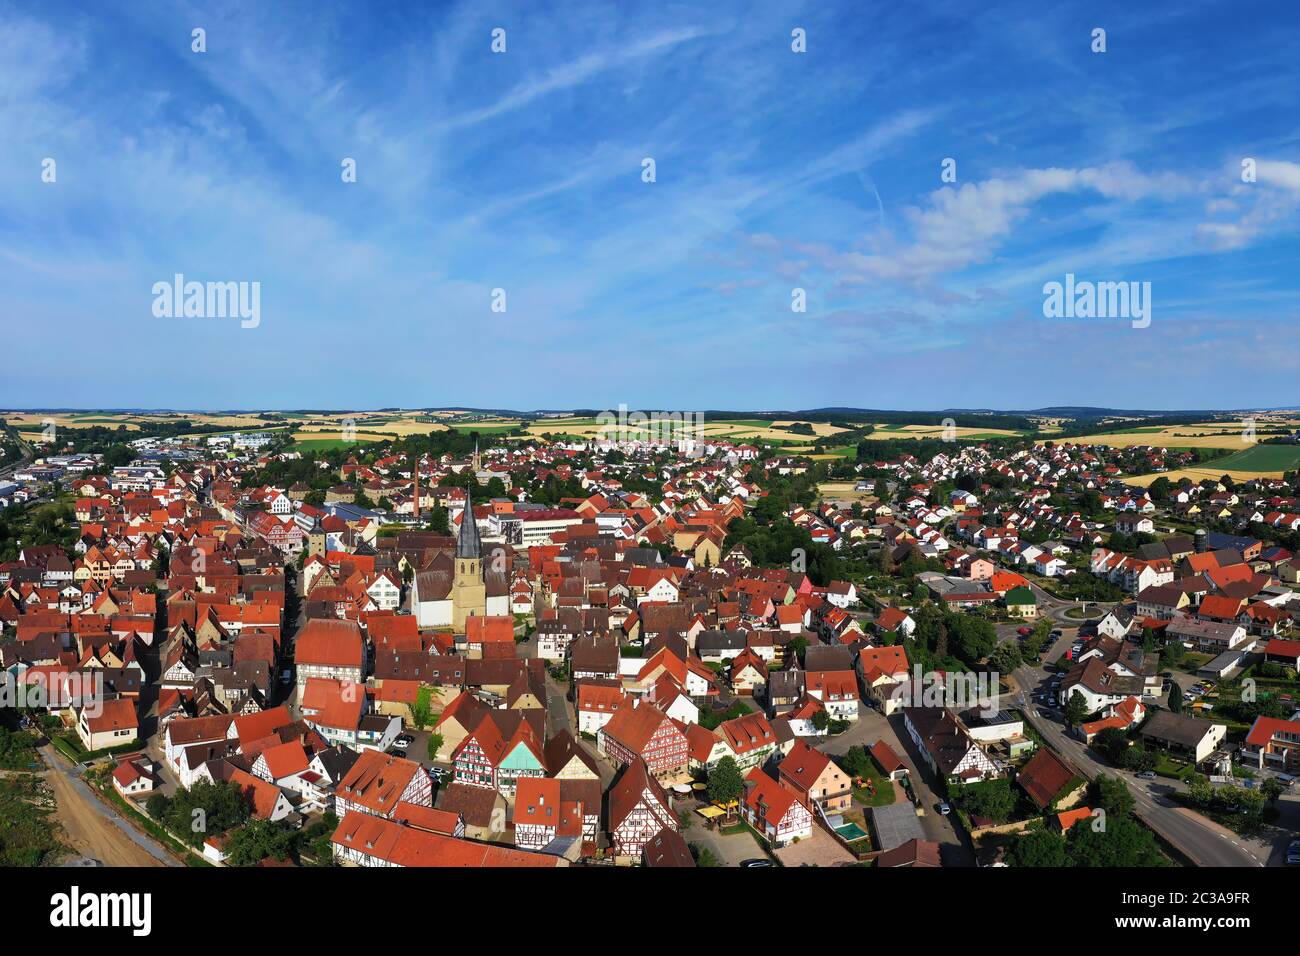 Eppingen ist eine Stadt in Deutschland mit vielen Attraktionen  Stockfotografie - Alamy